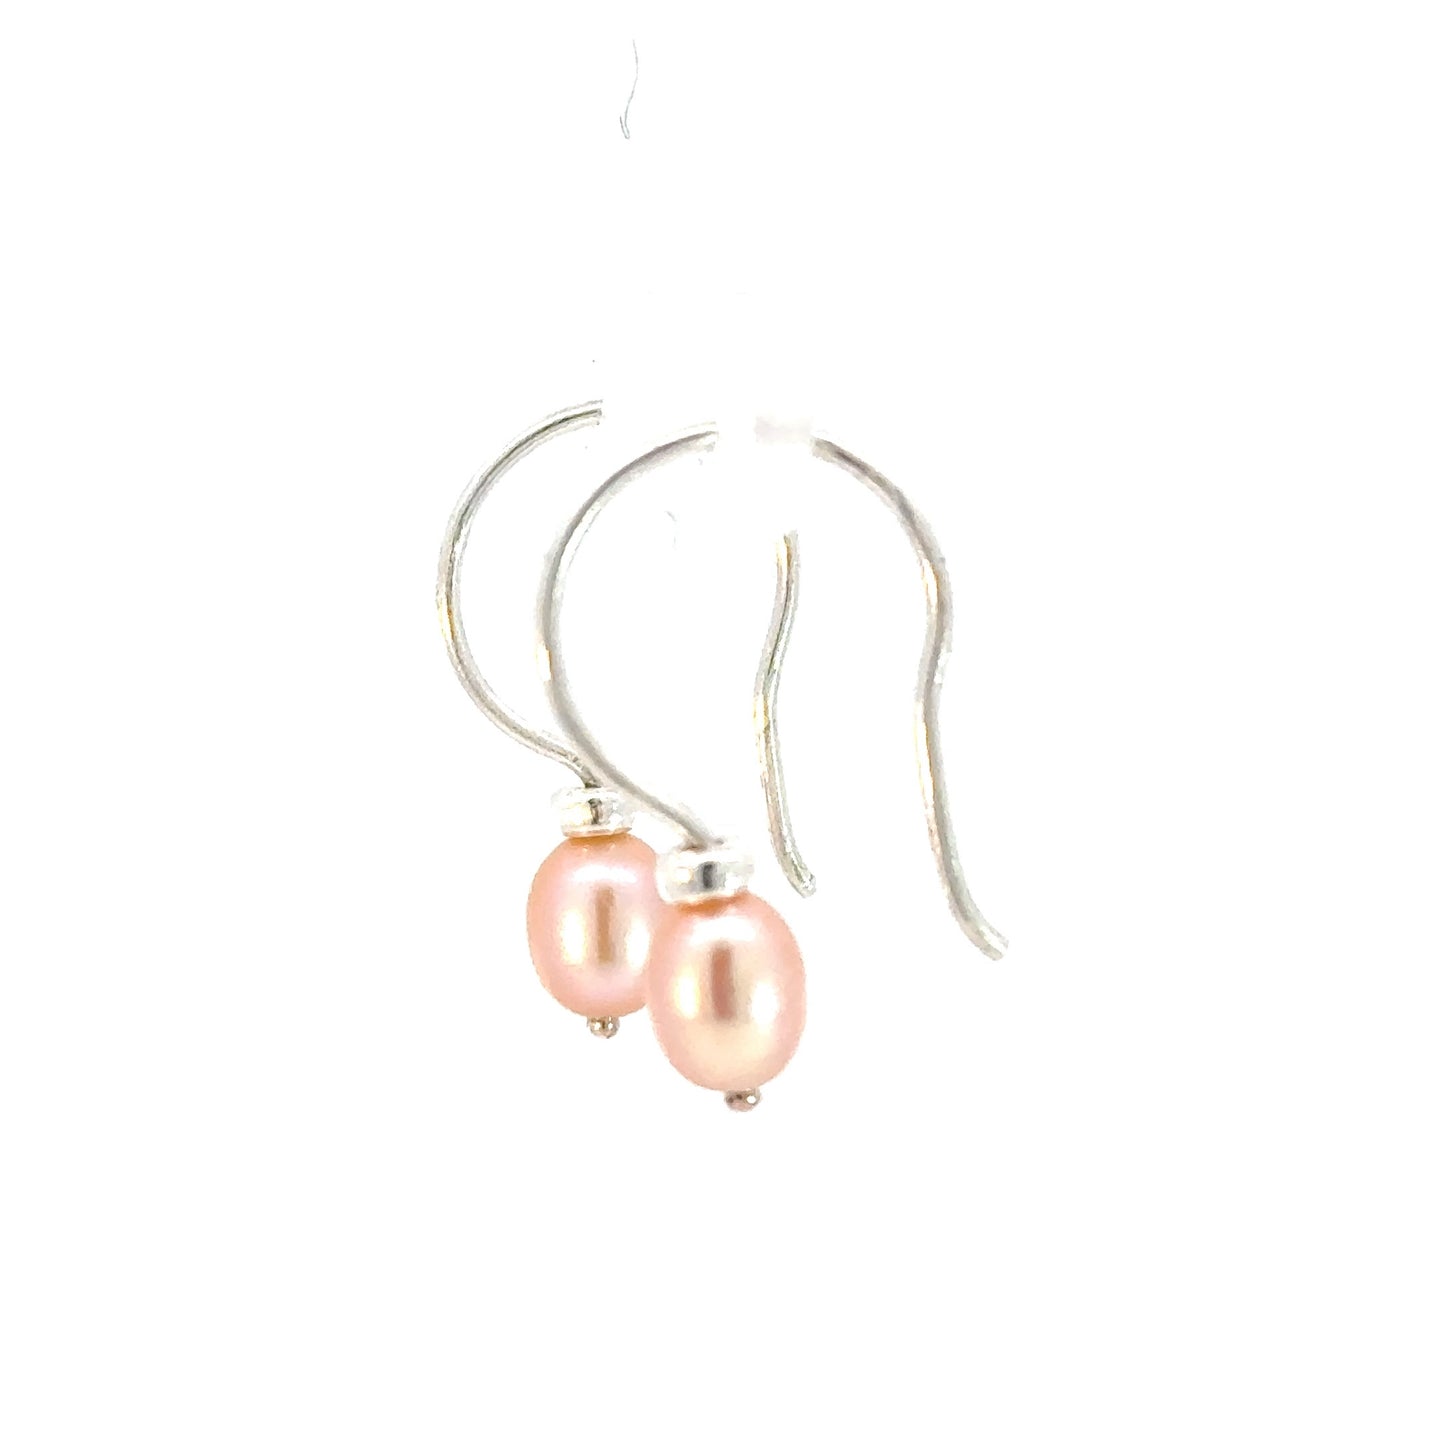 Single Pearl Earrings